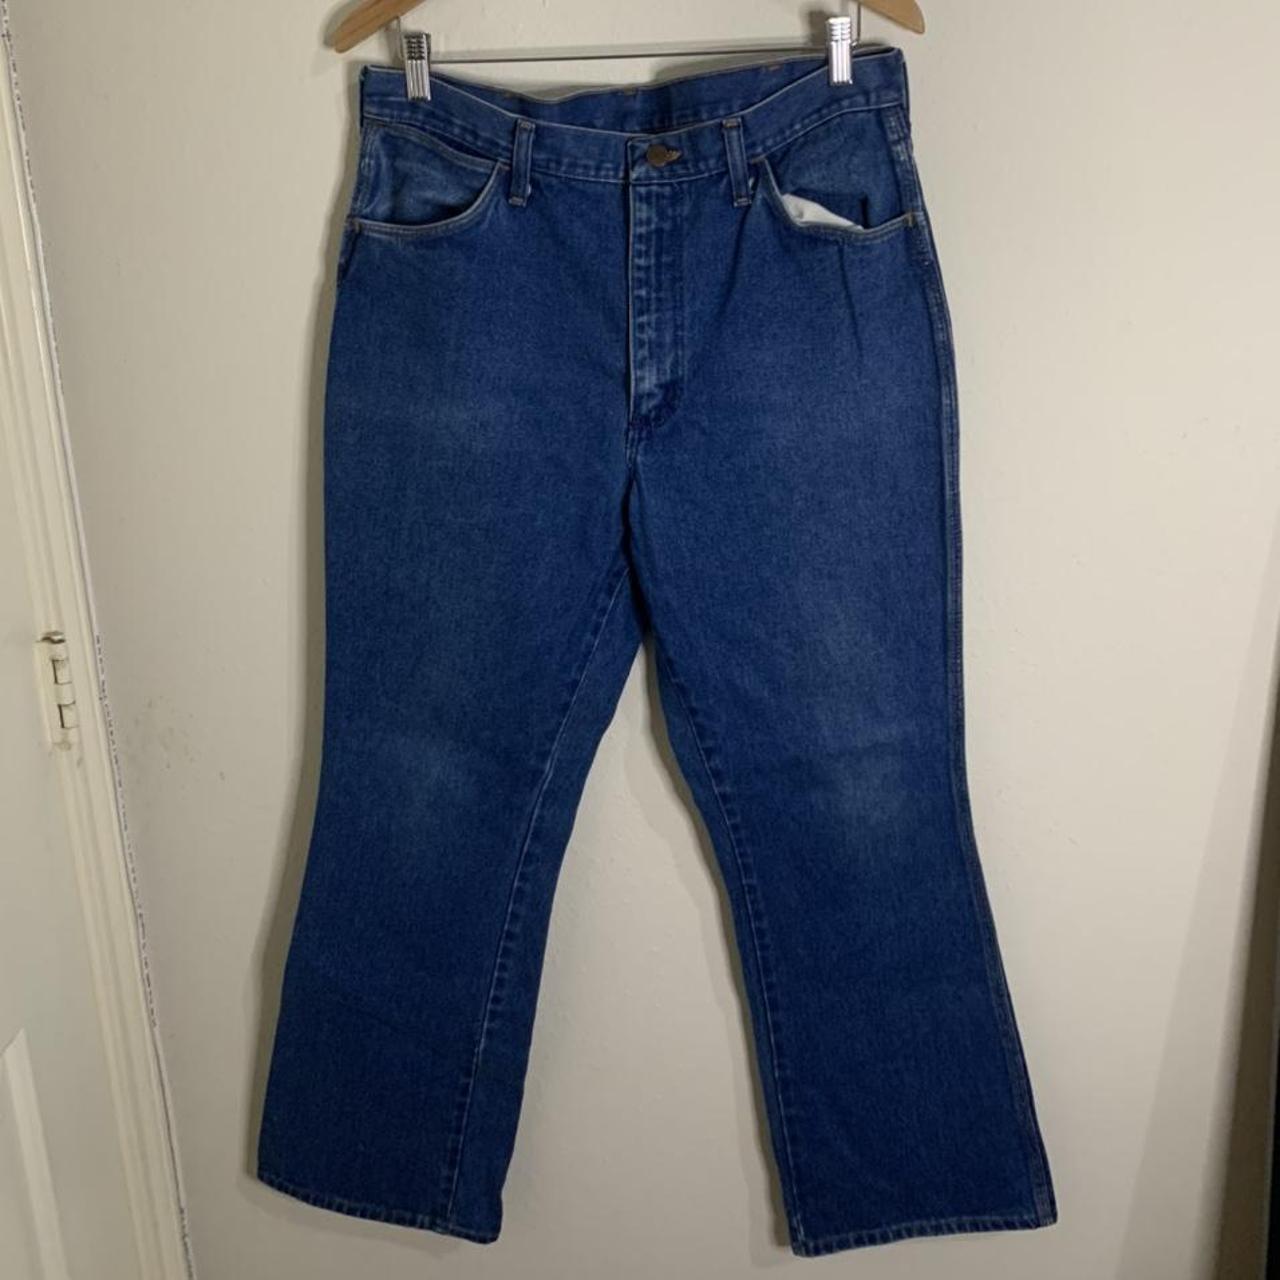 Vintage 70s Wrangler No Fault Jean jeans Scovil... - Depop